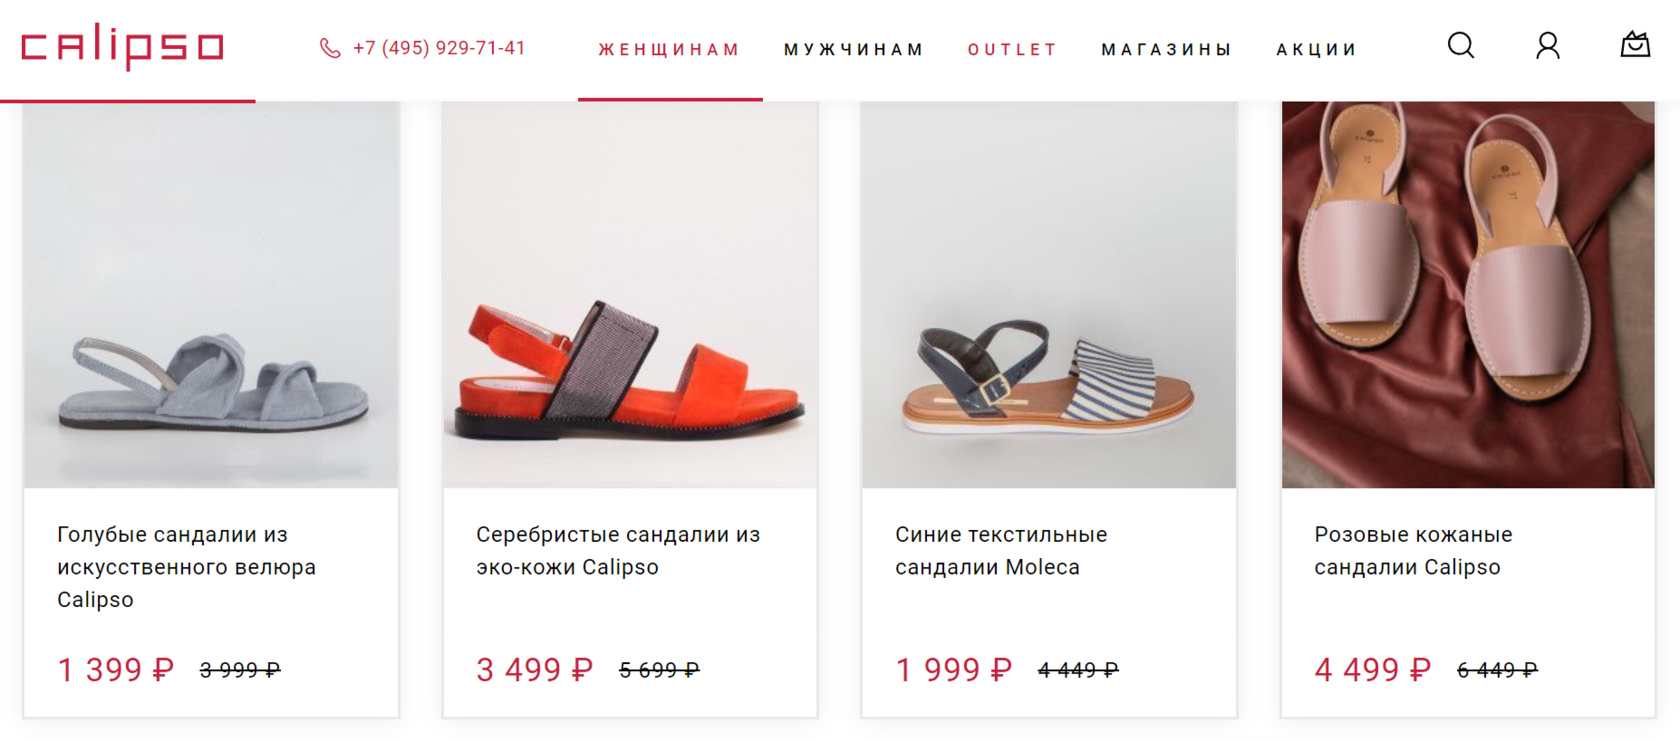 Calipso выделяется среди конкурентов выбором цветов обуви